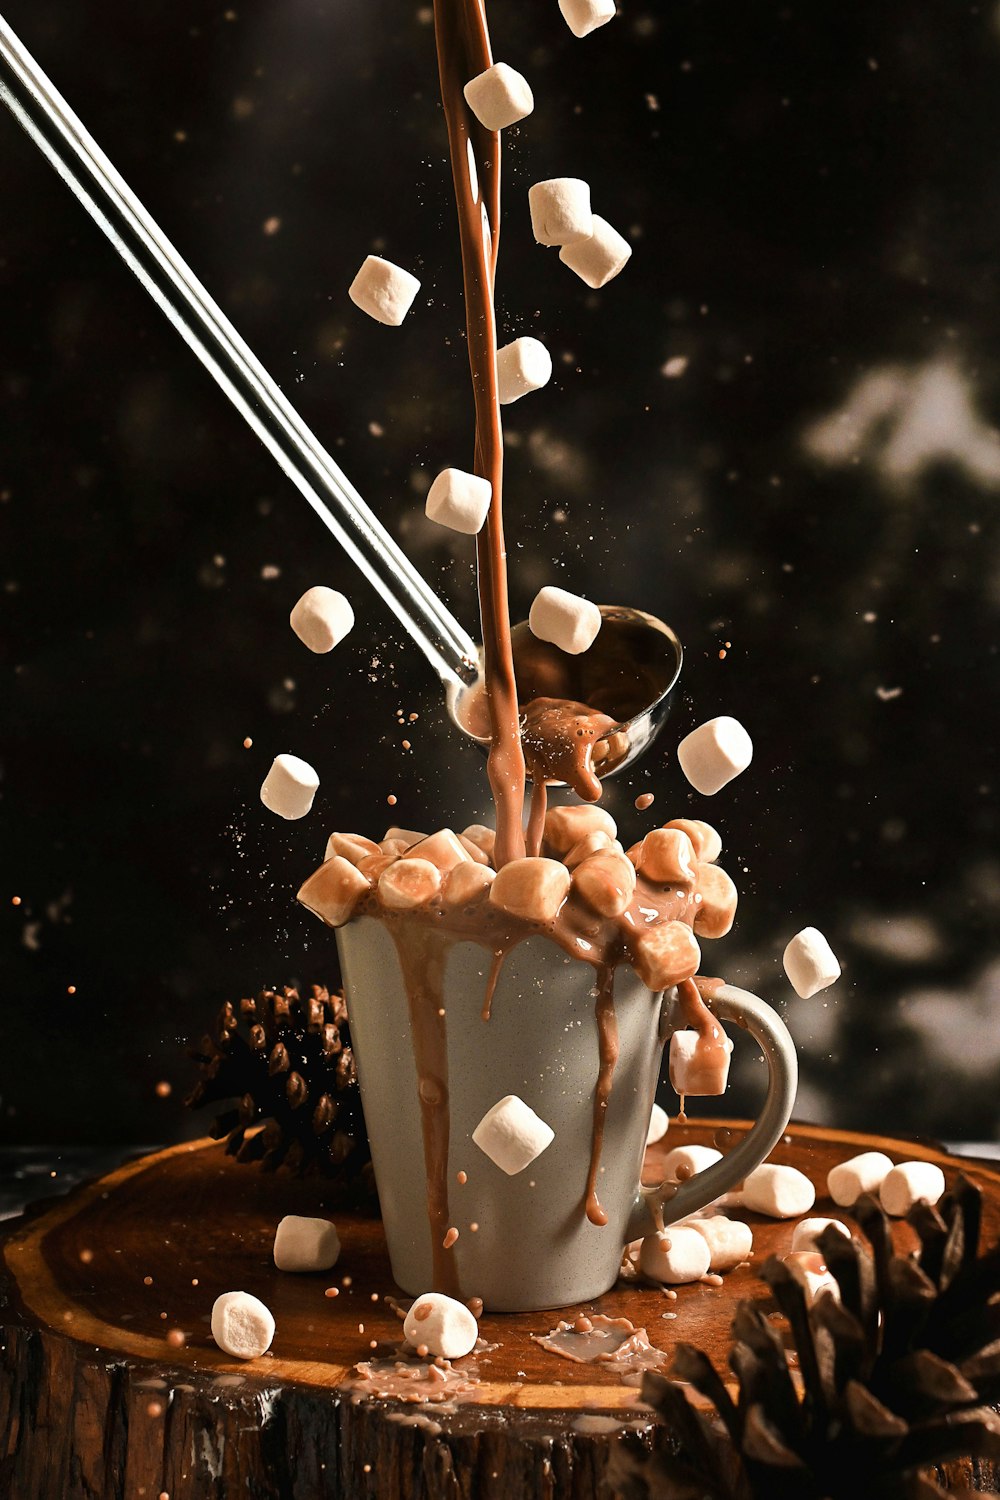 una tazza di cioccolata calda con marshmallow che ci cadono dentro